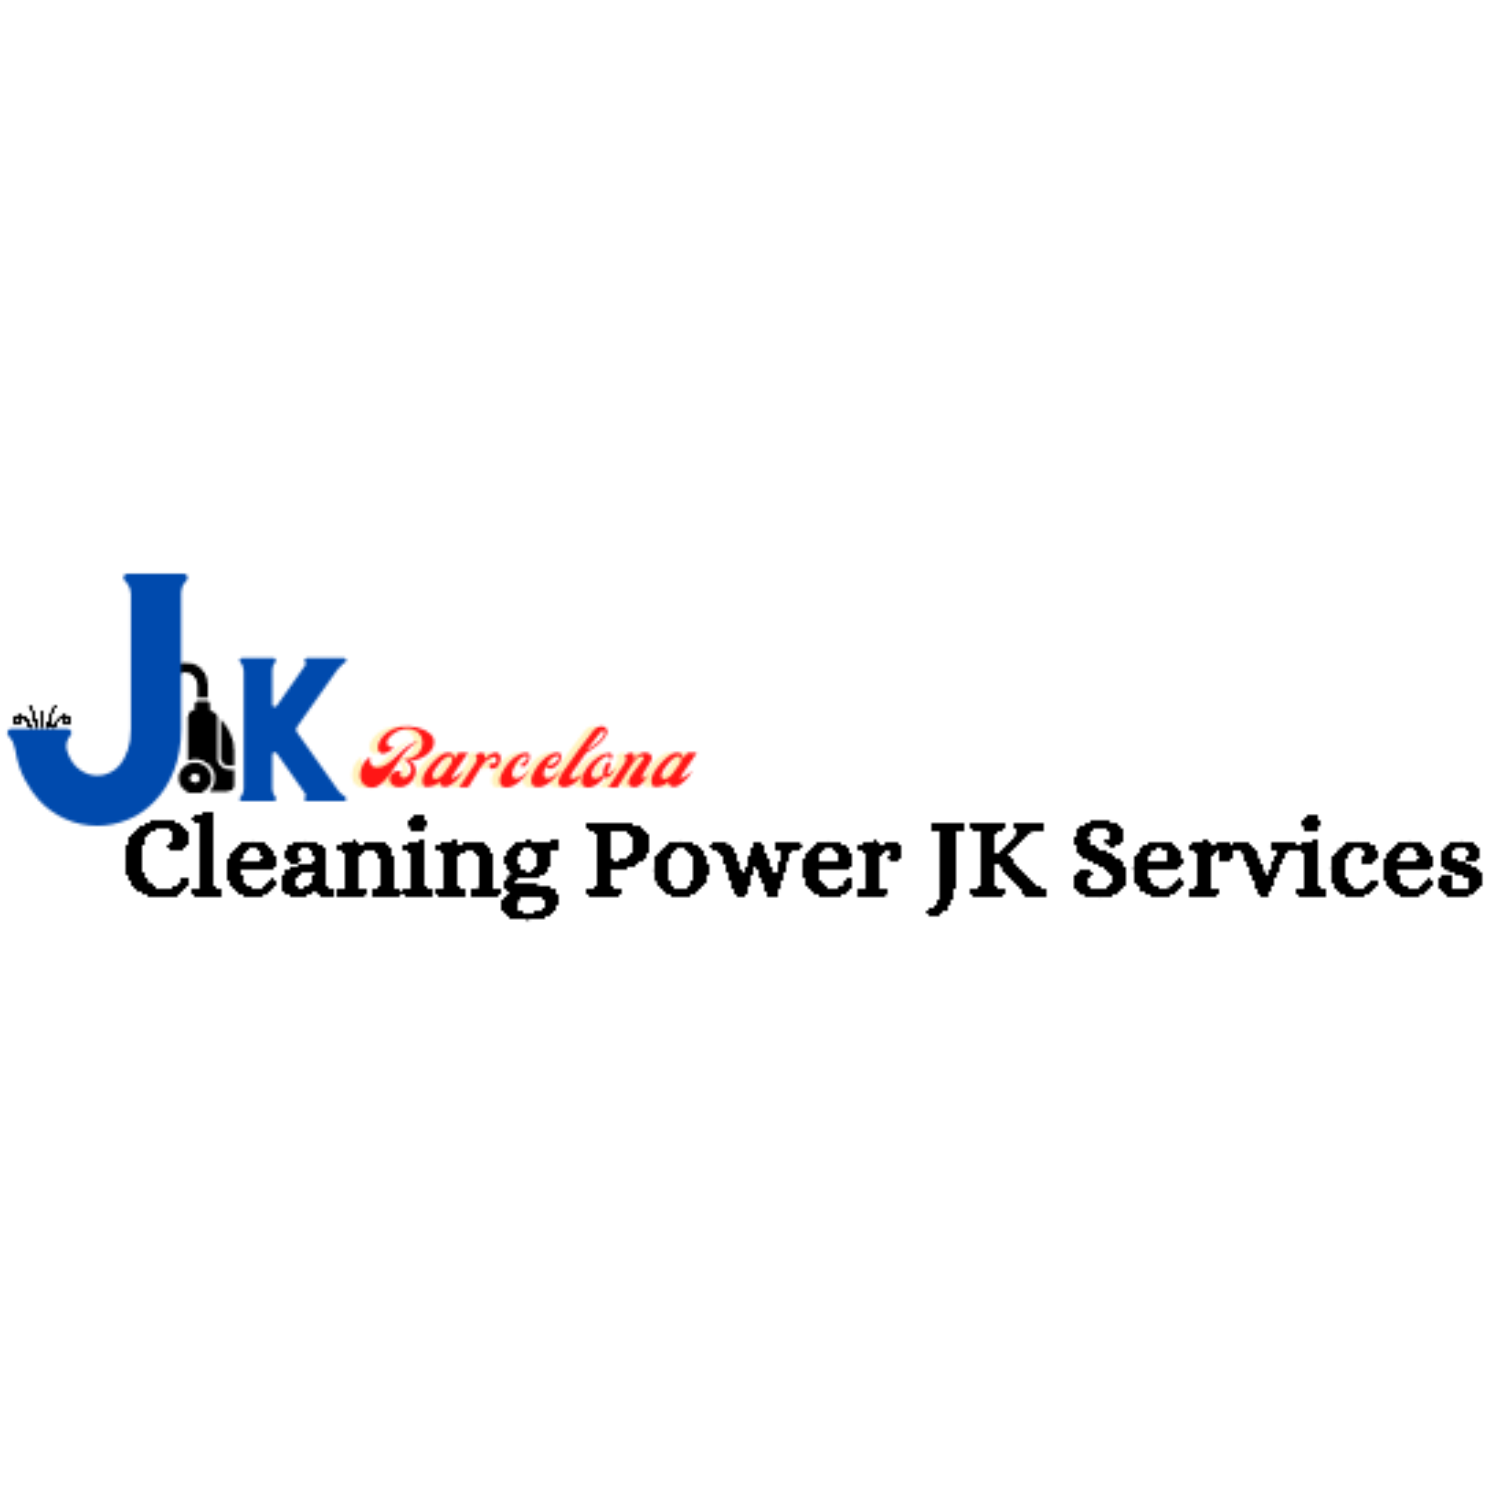 Cleaning Power JK Services L' Hospitalet de Llobregat